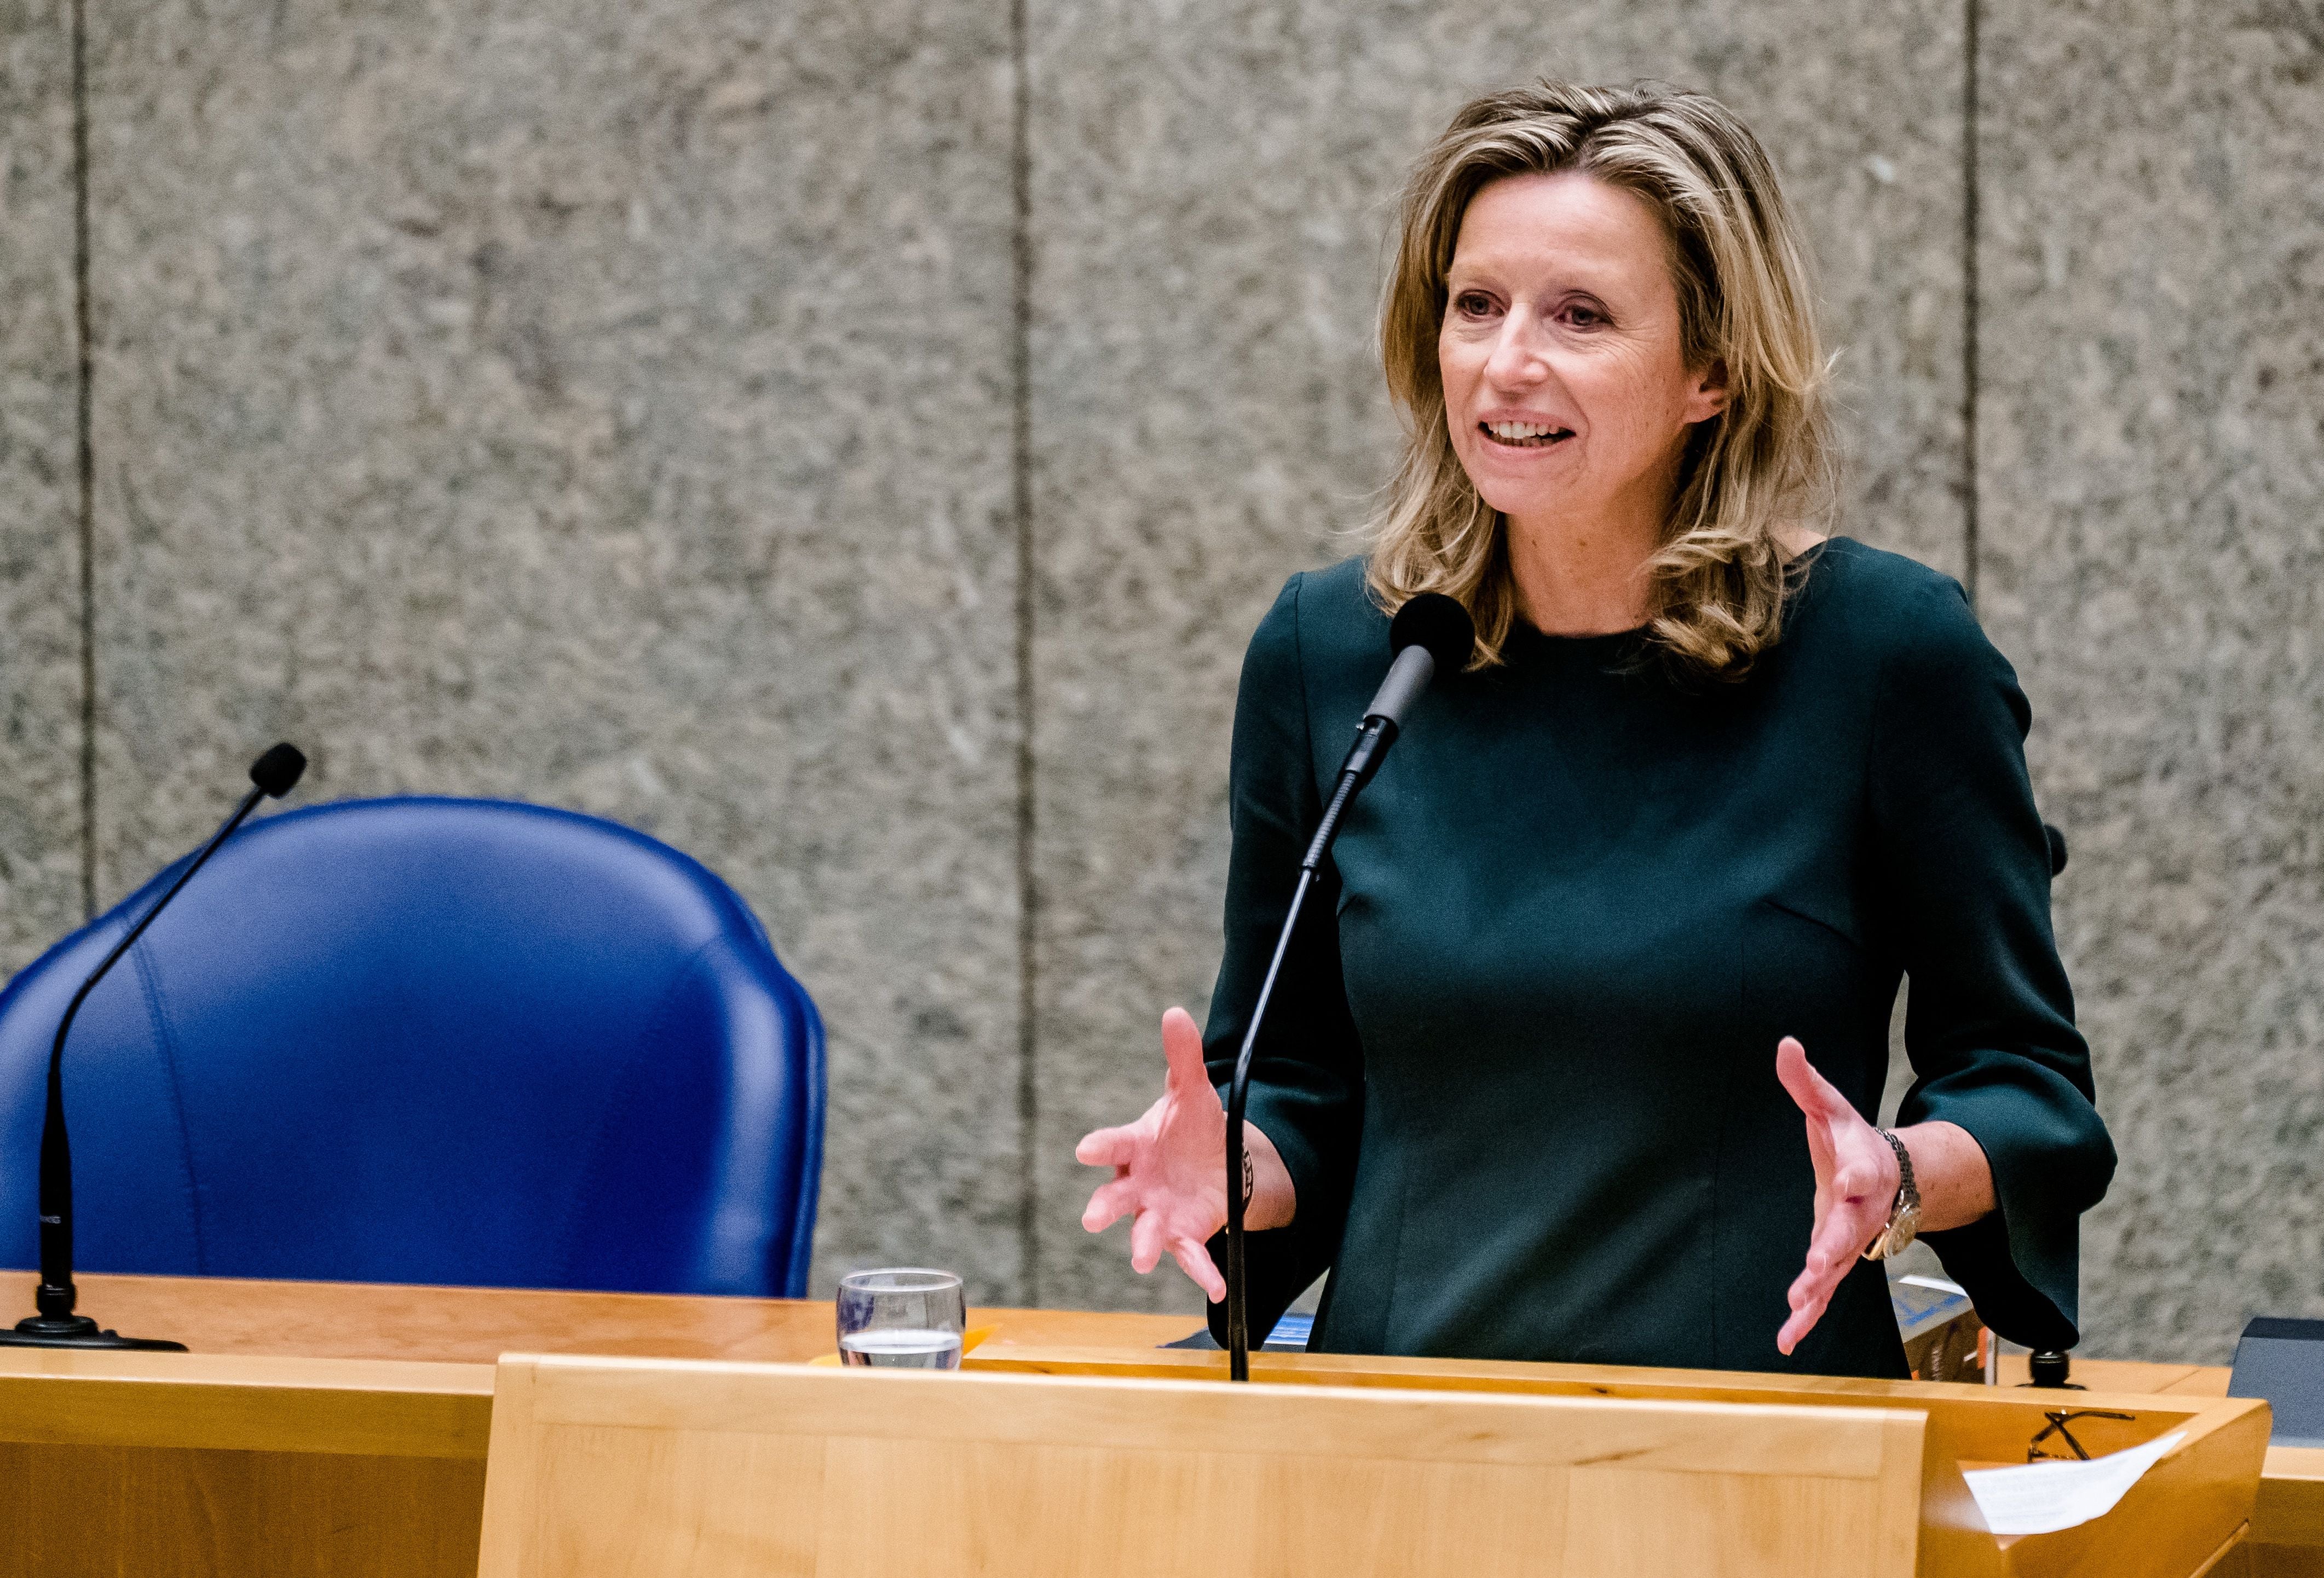 Kajsa Ollongren is a Dutch-Swedish politician who is in the ‘D66’ Dutch party